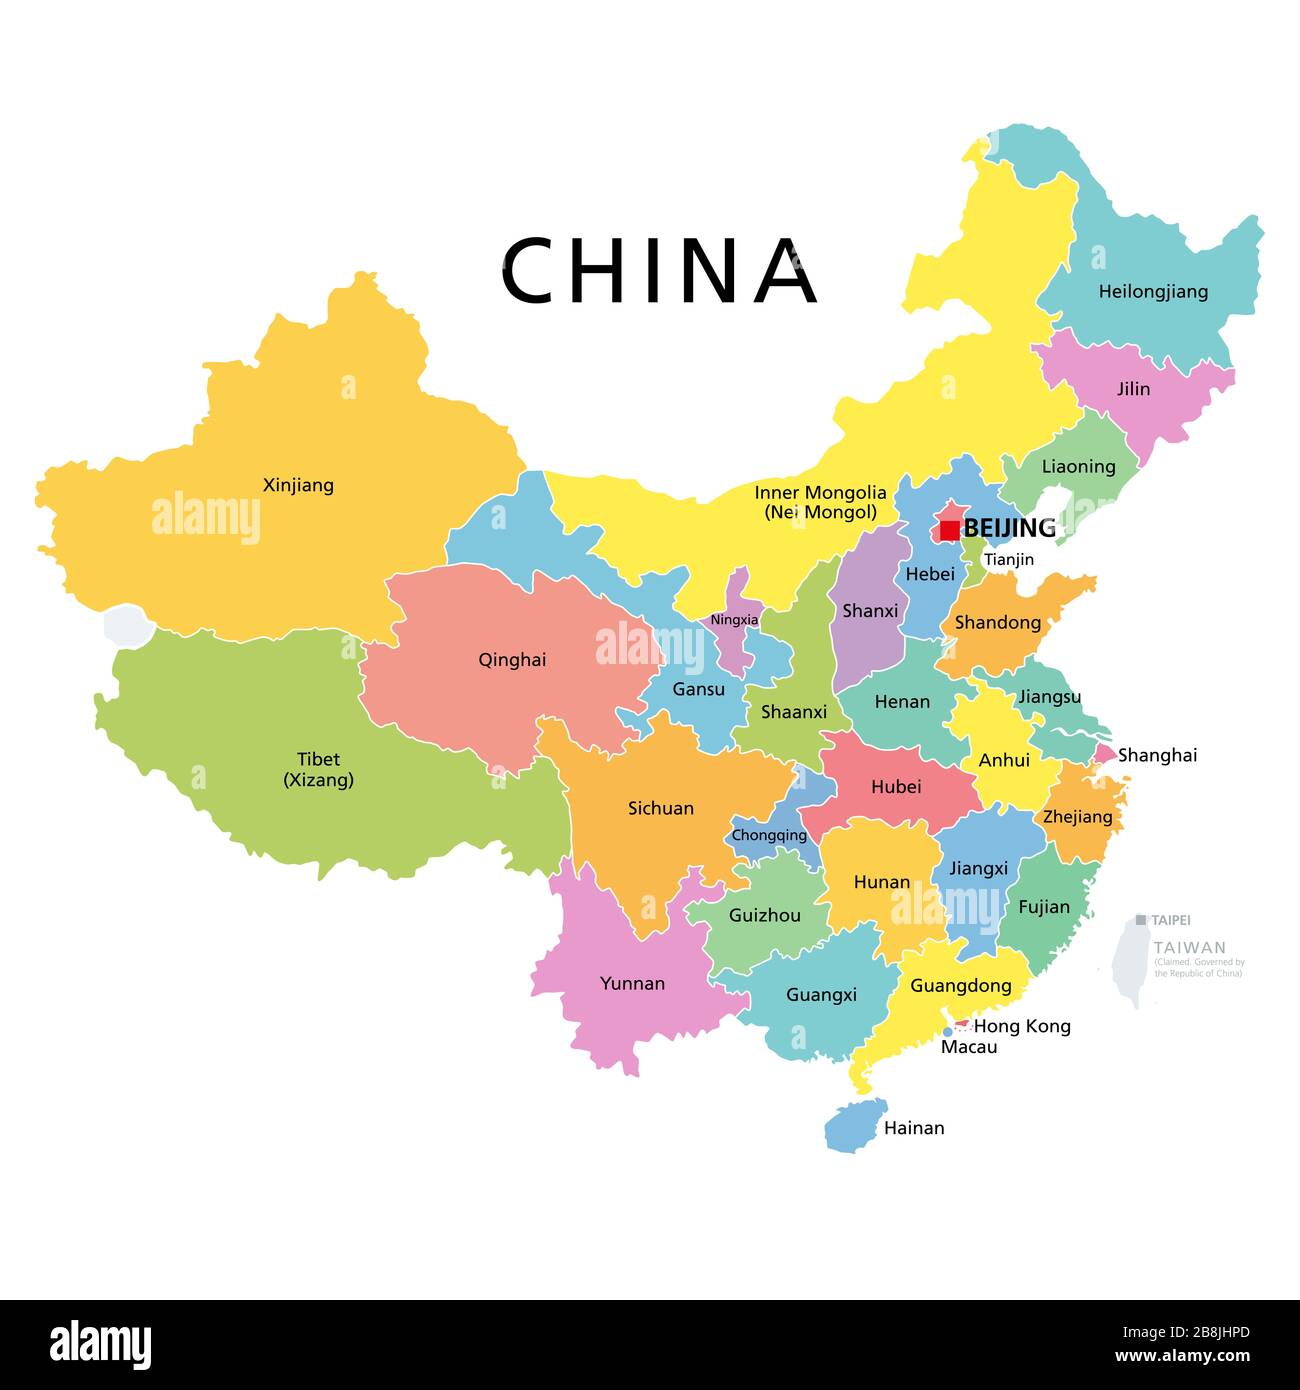 Cina, mappa politica con province multicolore. Repubblica popolare cinese con capitale Pechino, frontiere e divisioni amministrative. Inglese. Foto Stock